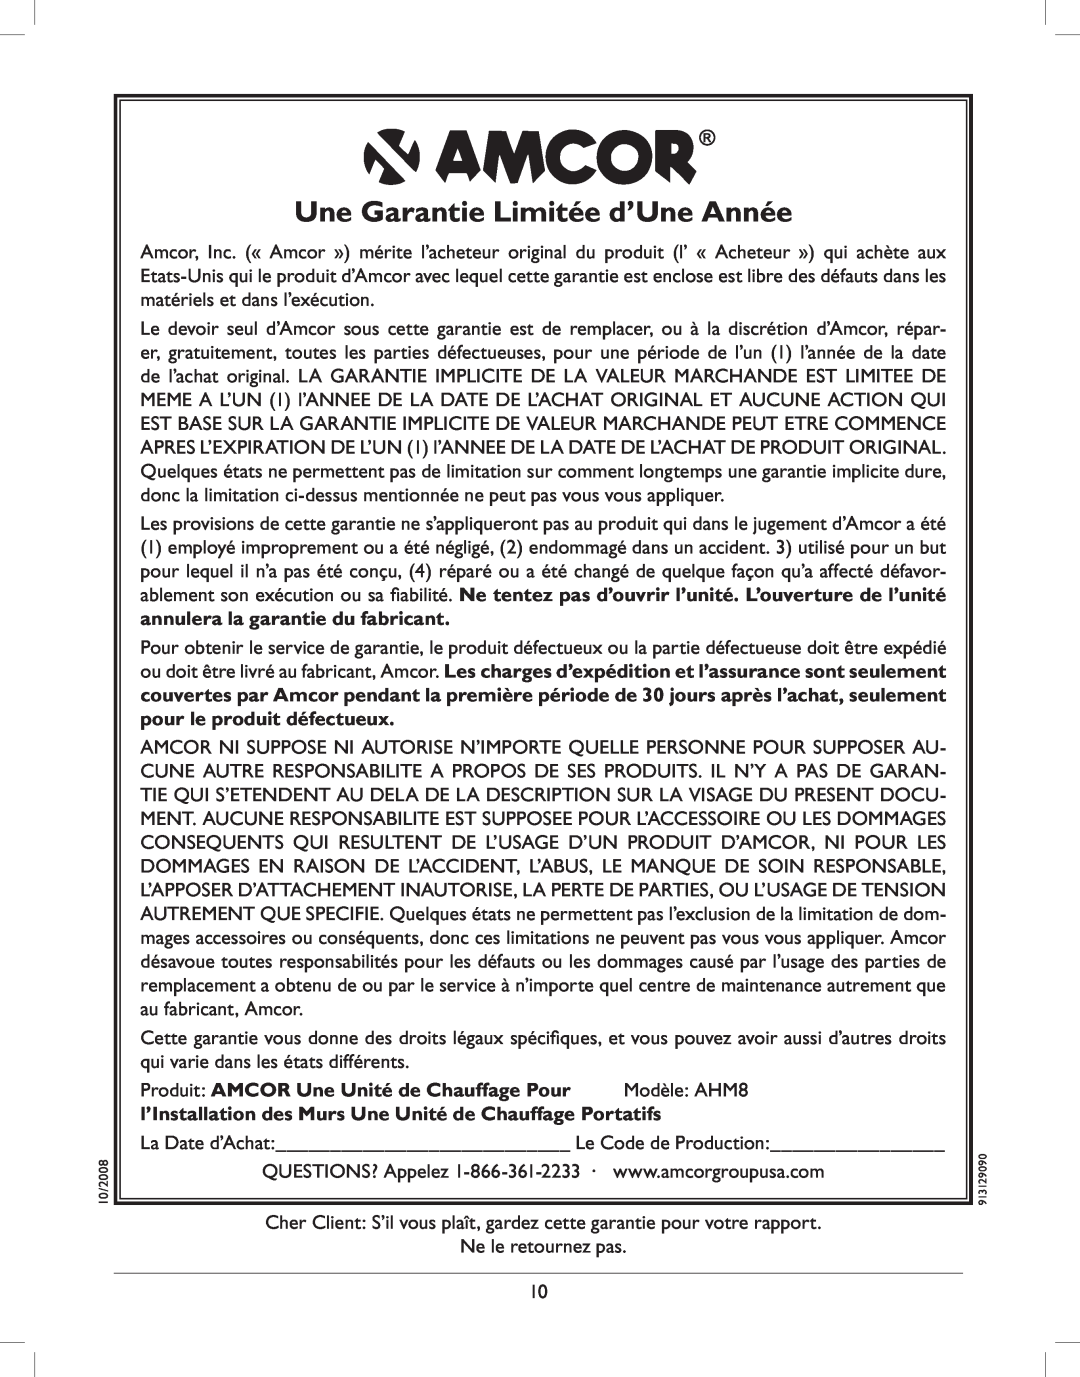 Amcor AMH8 owner manual Une Garantie Limitée d’Une Année 